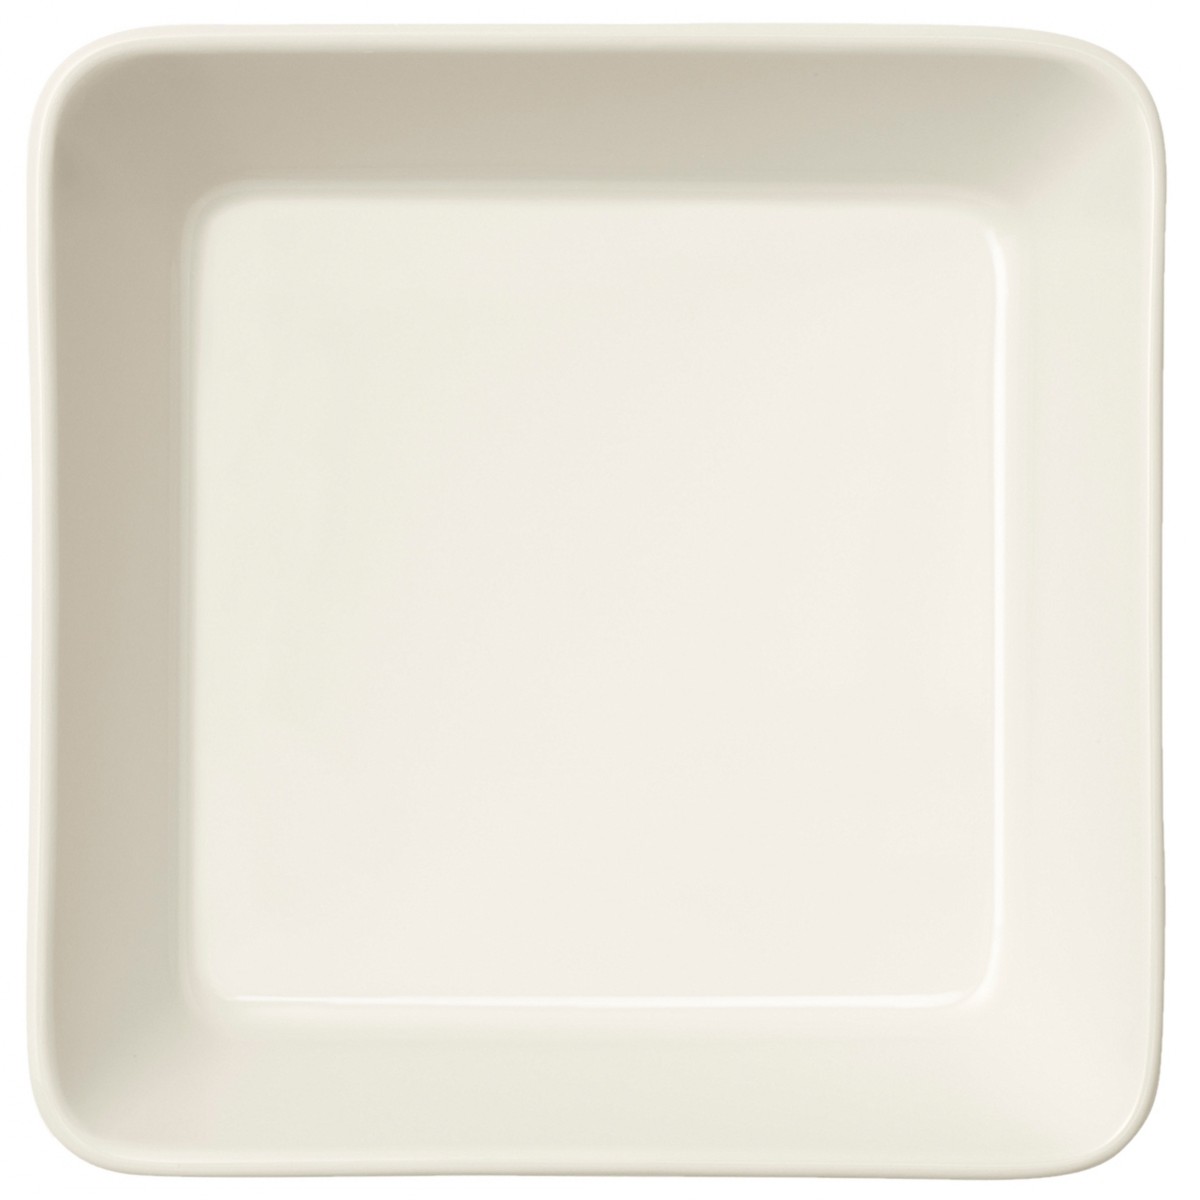 12x12cm - mini-plat carré Teema blanc - 1006239